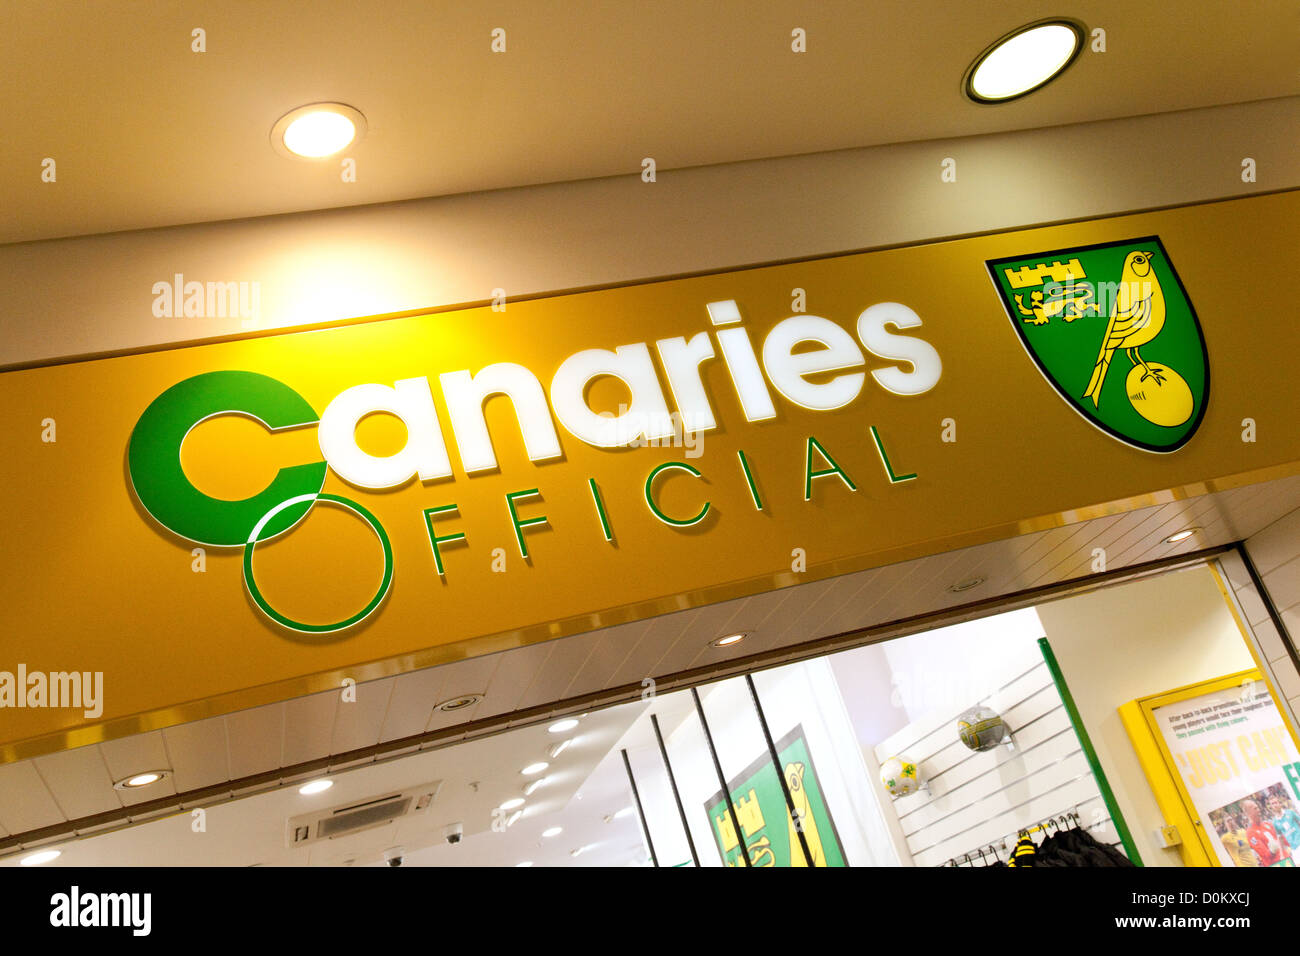 El Norwich City Football Club Canarias tienda, centro comercial Chapelfield, Norwich Norfolk UK Foto de stock